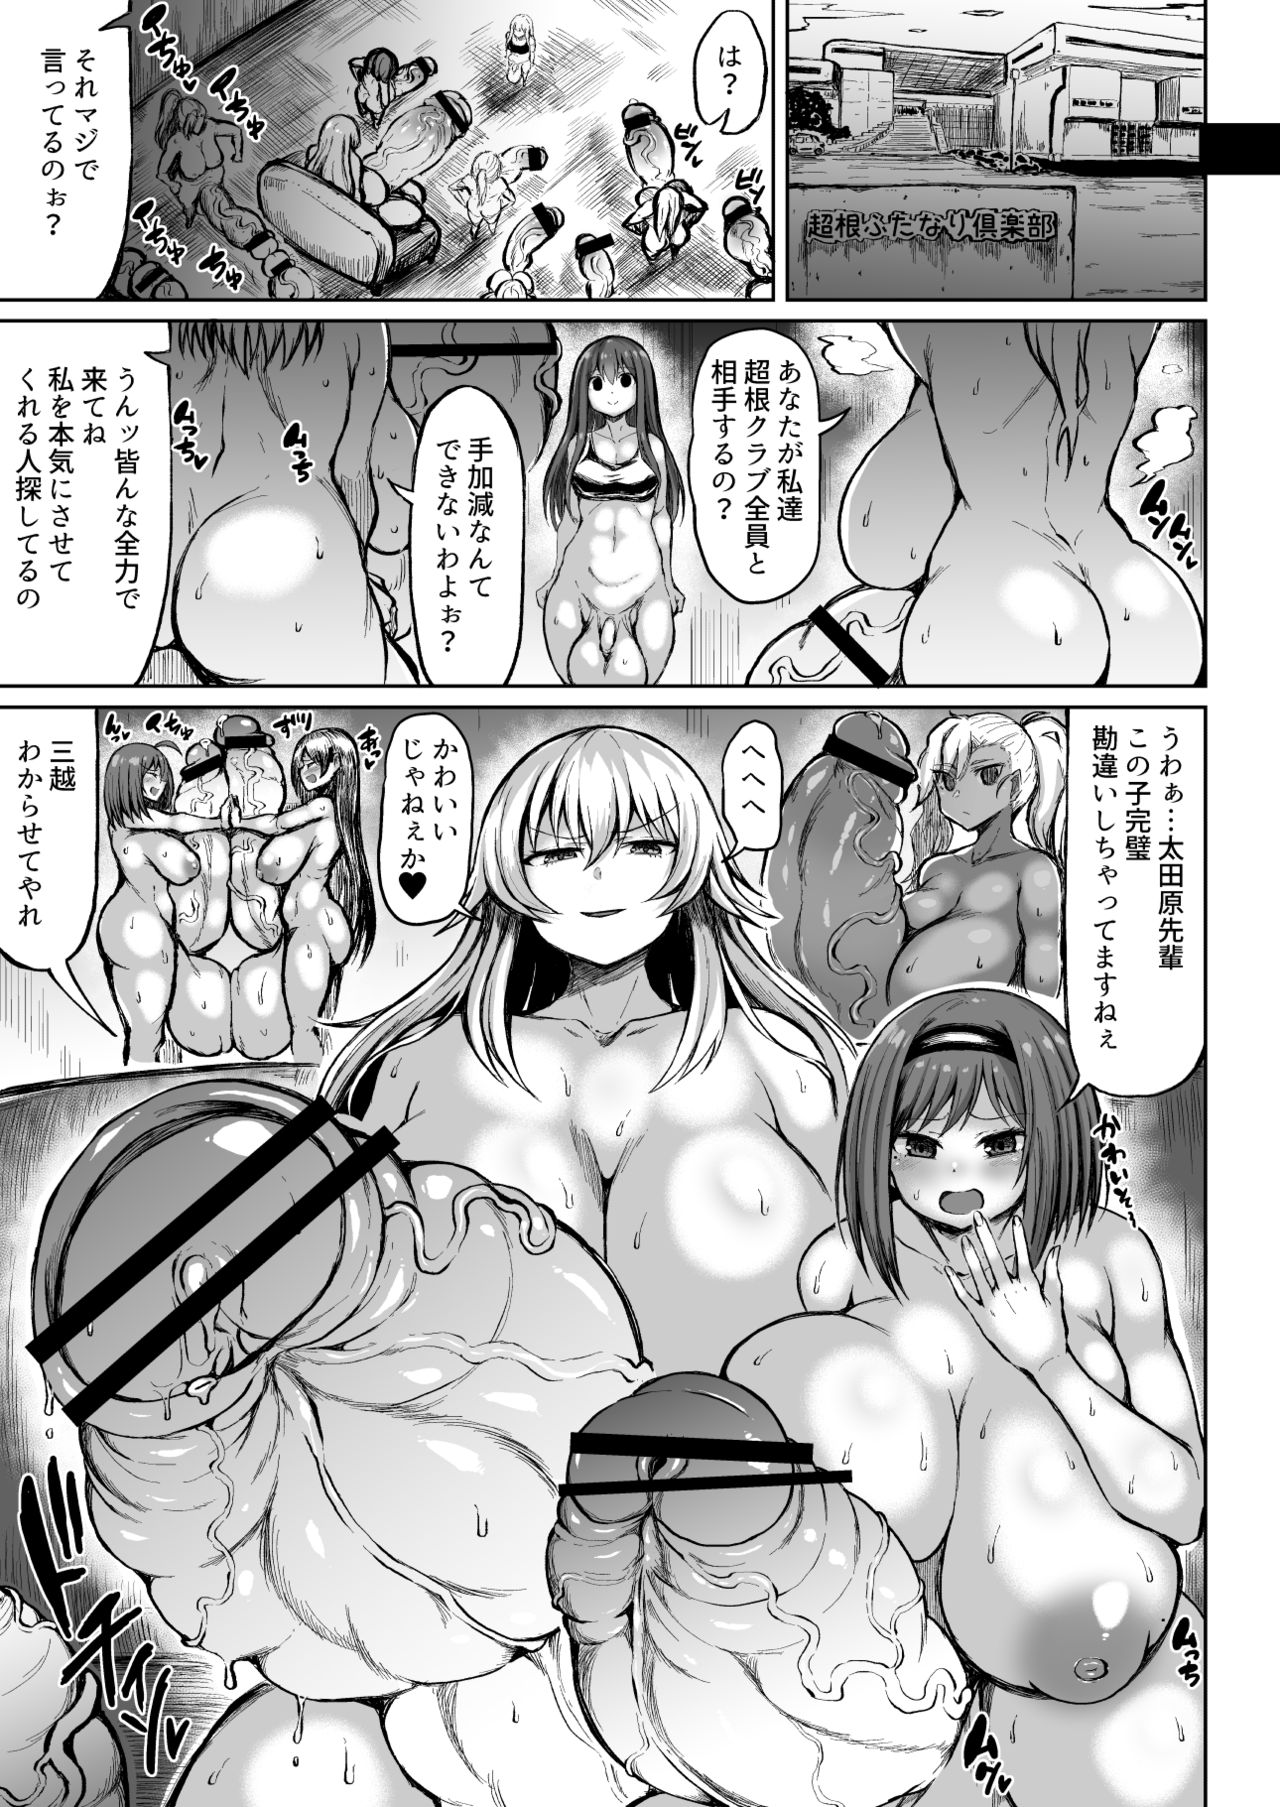 Futanari Manga Big Balls Porn Comics